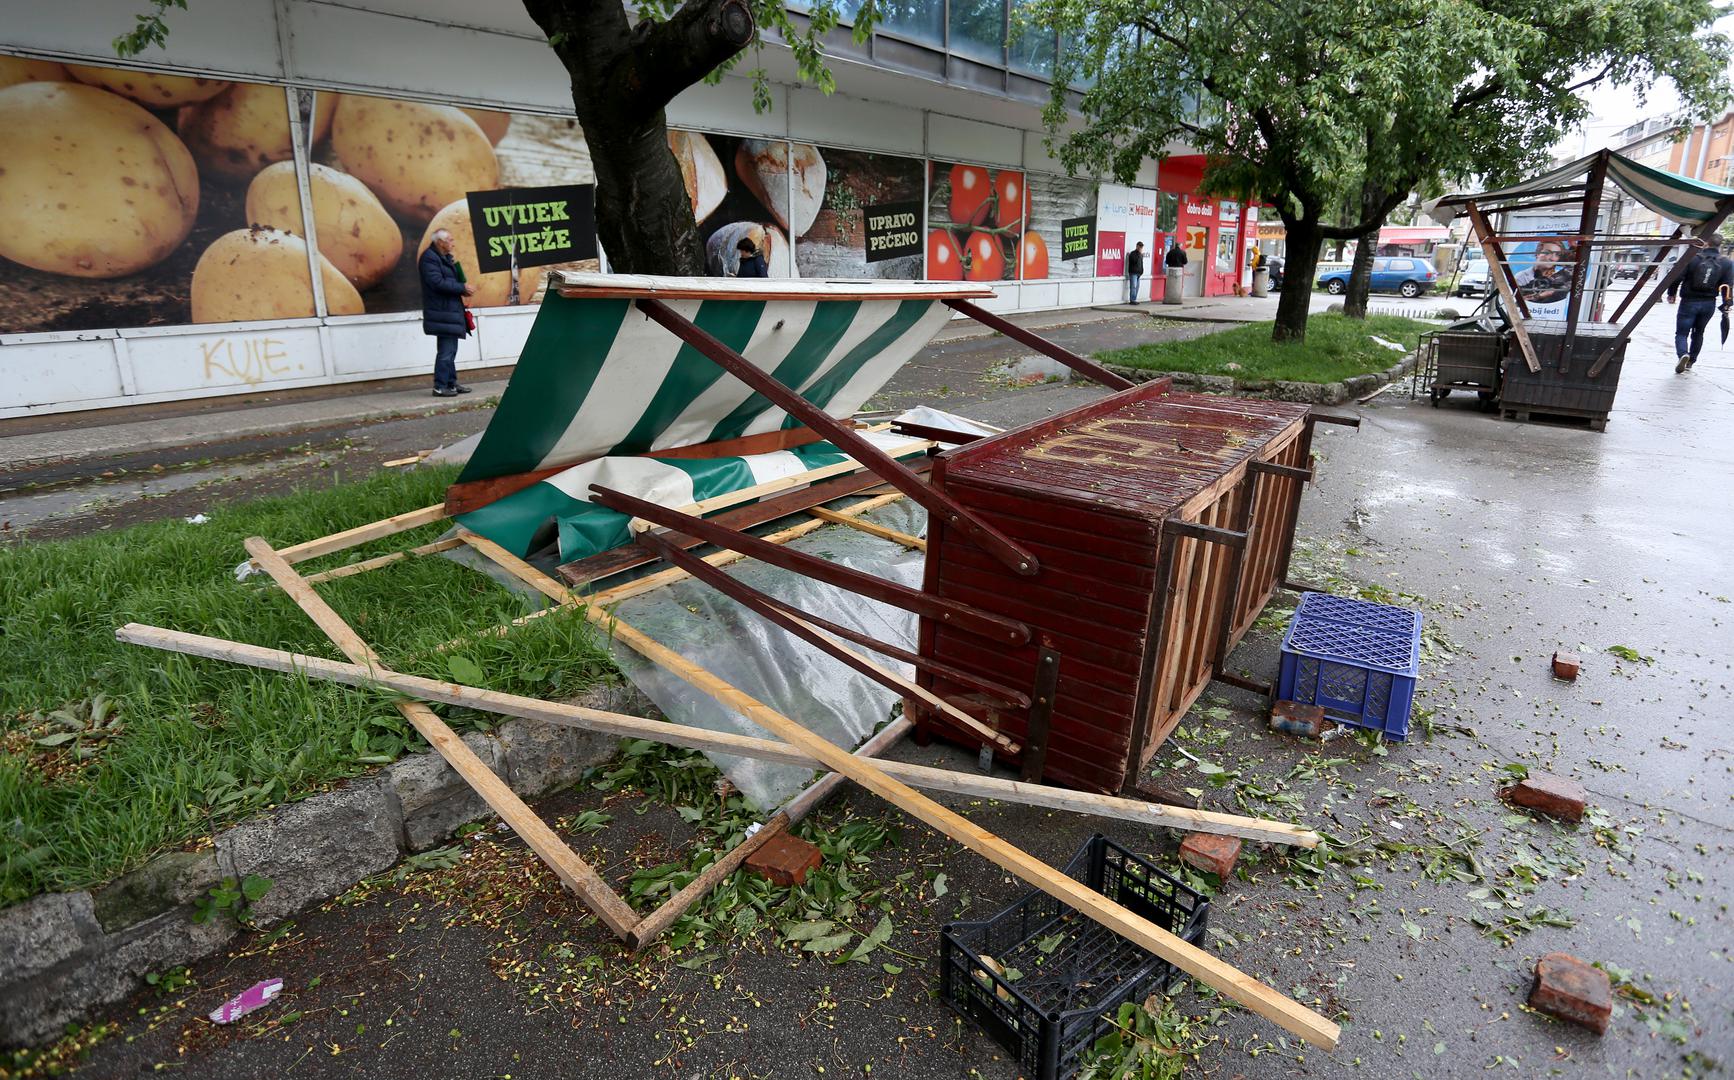 Snažan i olujan vjetar pogodio je Zagreb, a na ulicama se nalazi mnogo polomljenih grana stabala, razbacanih kanti za smeće, pa čak i štandova. Ponegdje su oštećeni semafori, intervencijske službe i vatrogasci su na terenu, a policija upozorava građane da ne izlaze ako ne moraju. 